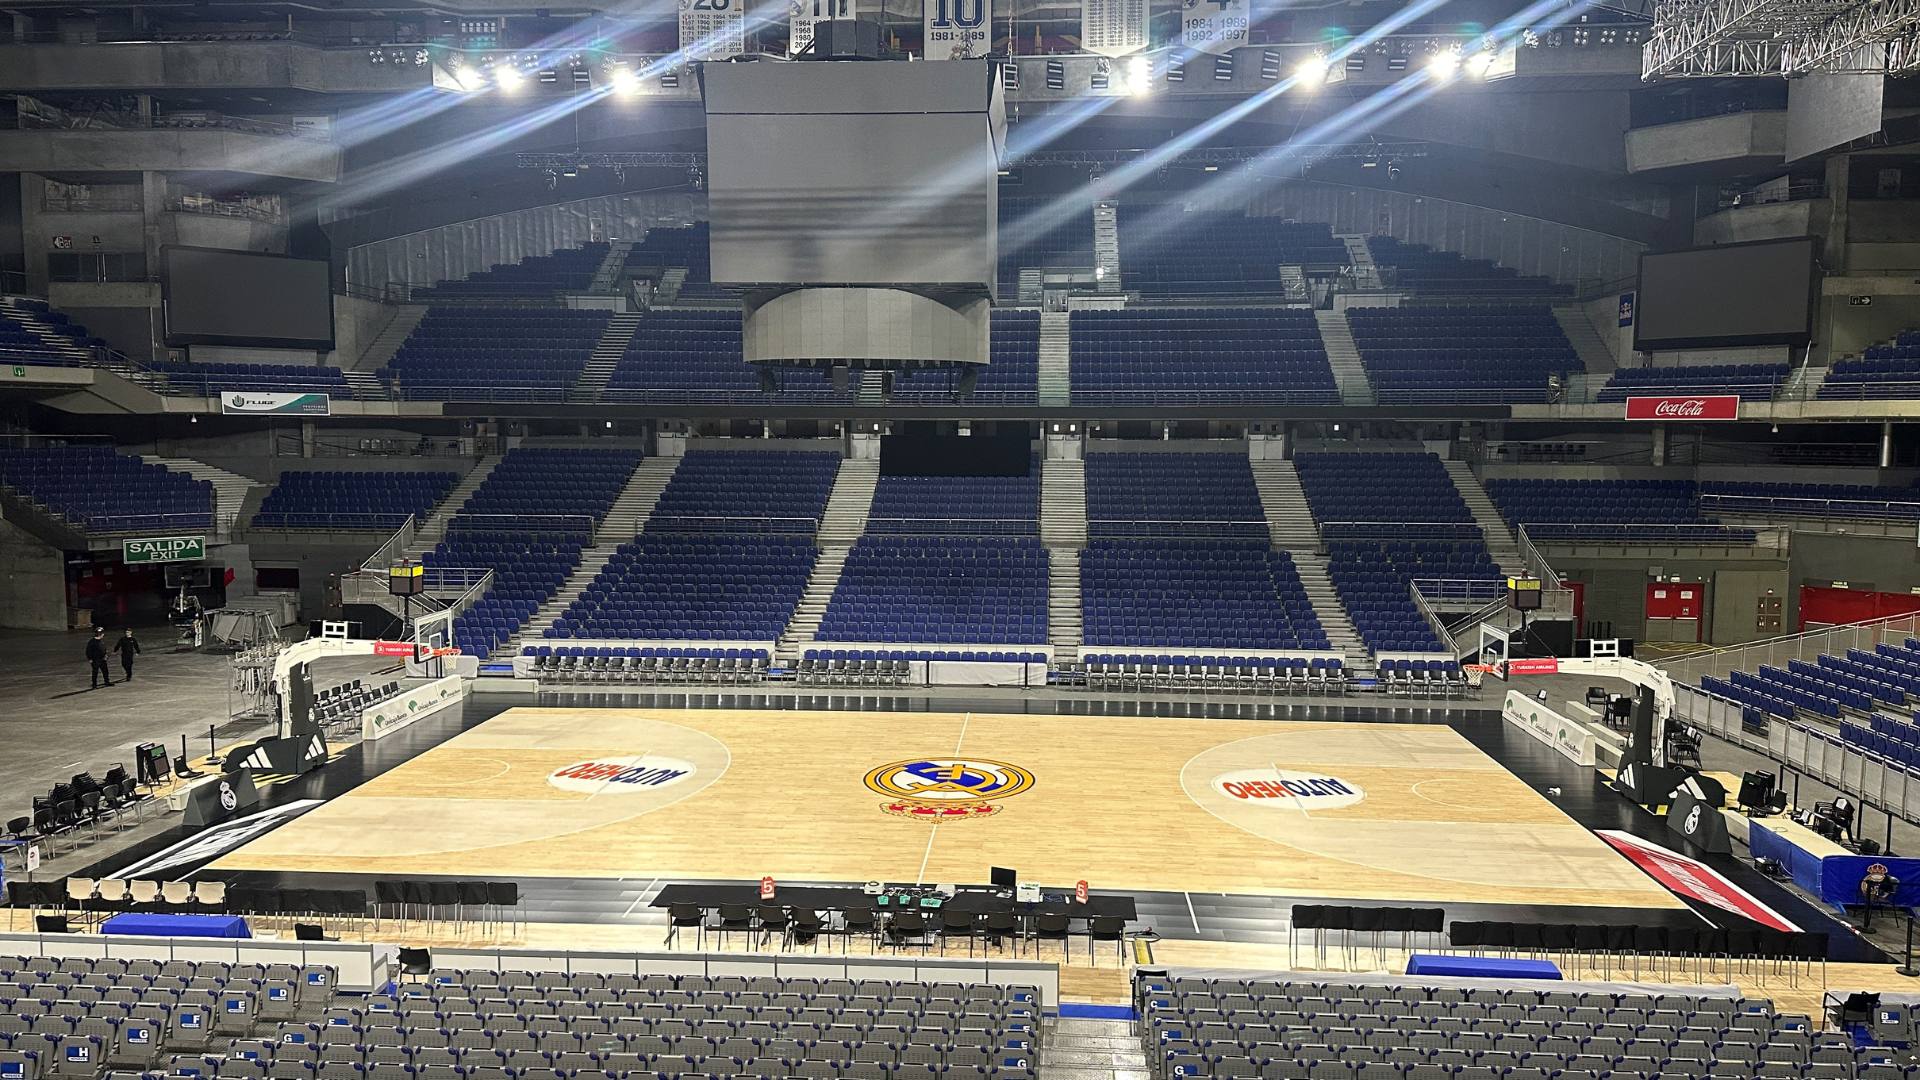 El WiZink Center estrena pista de baloncesto de última generación